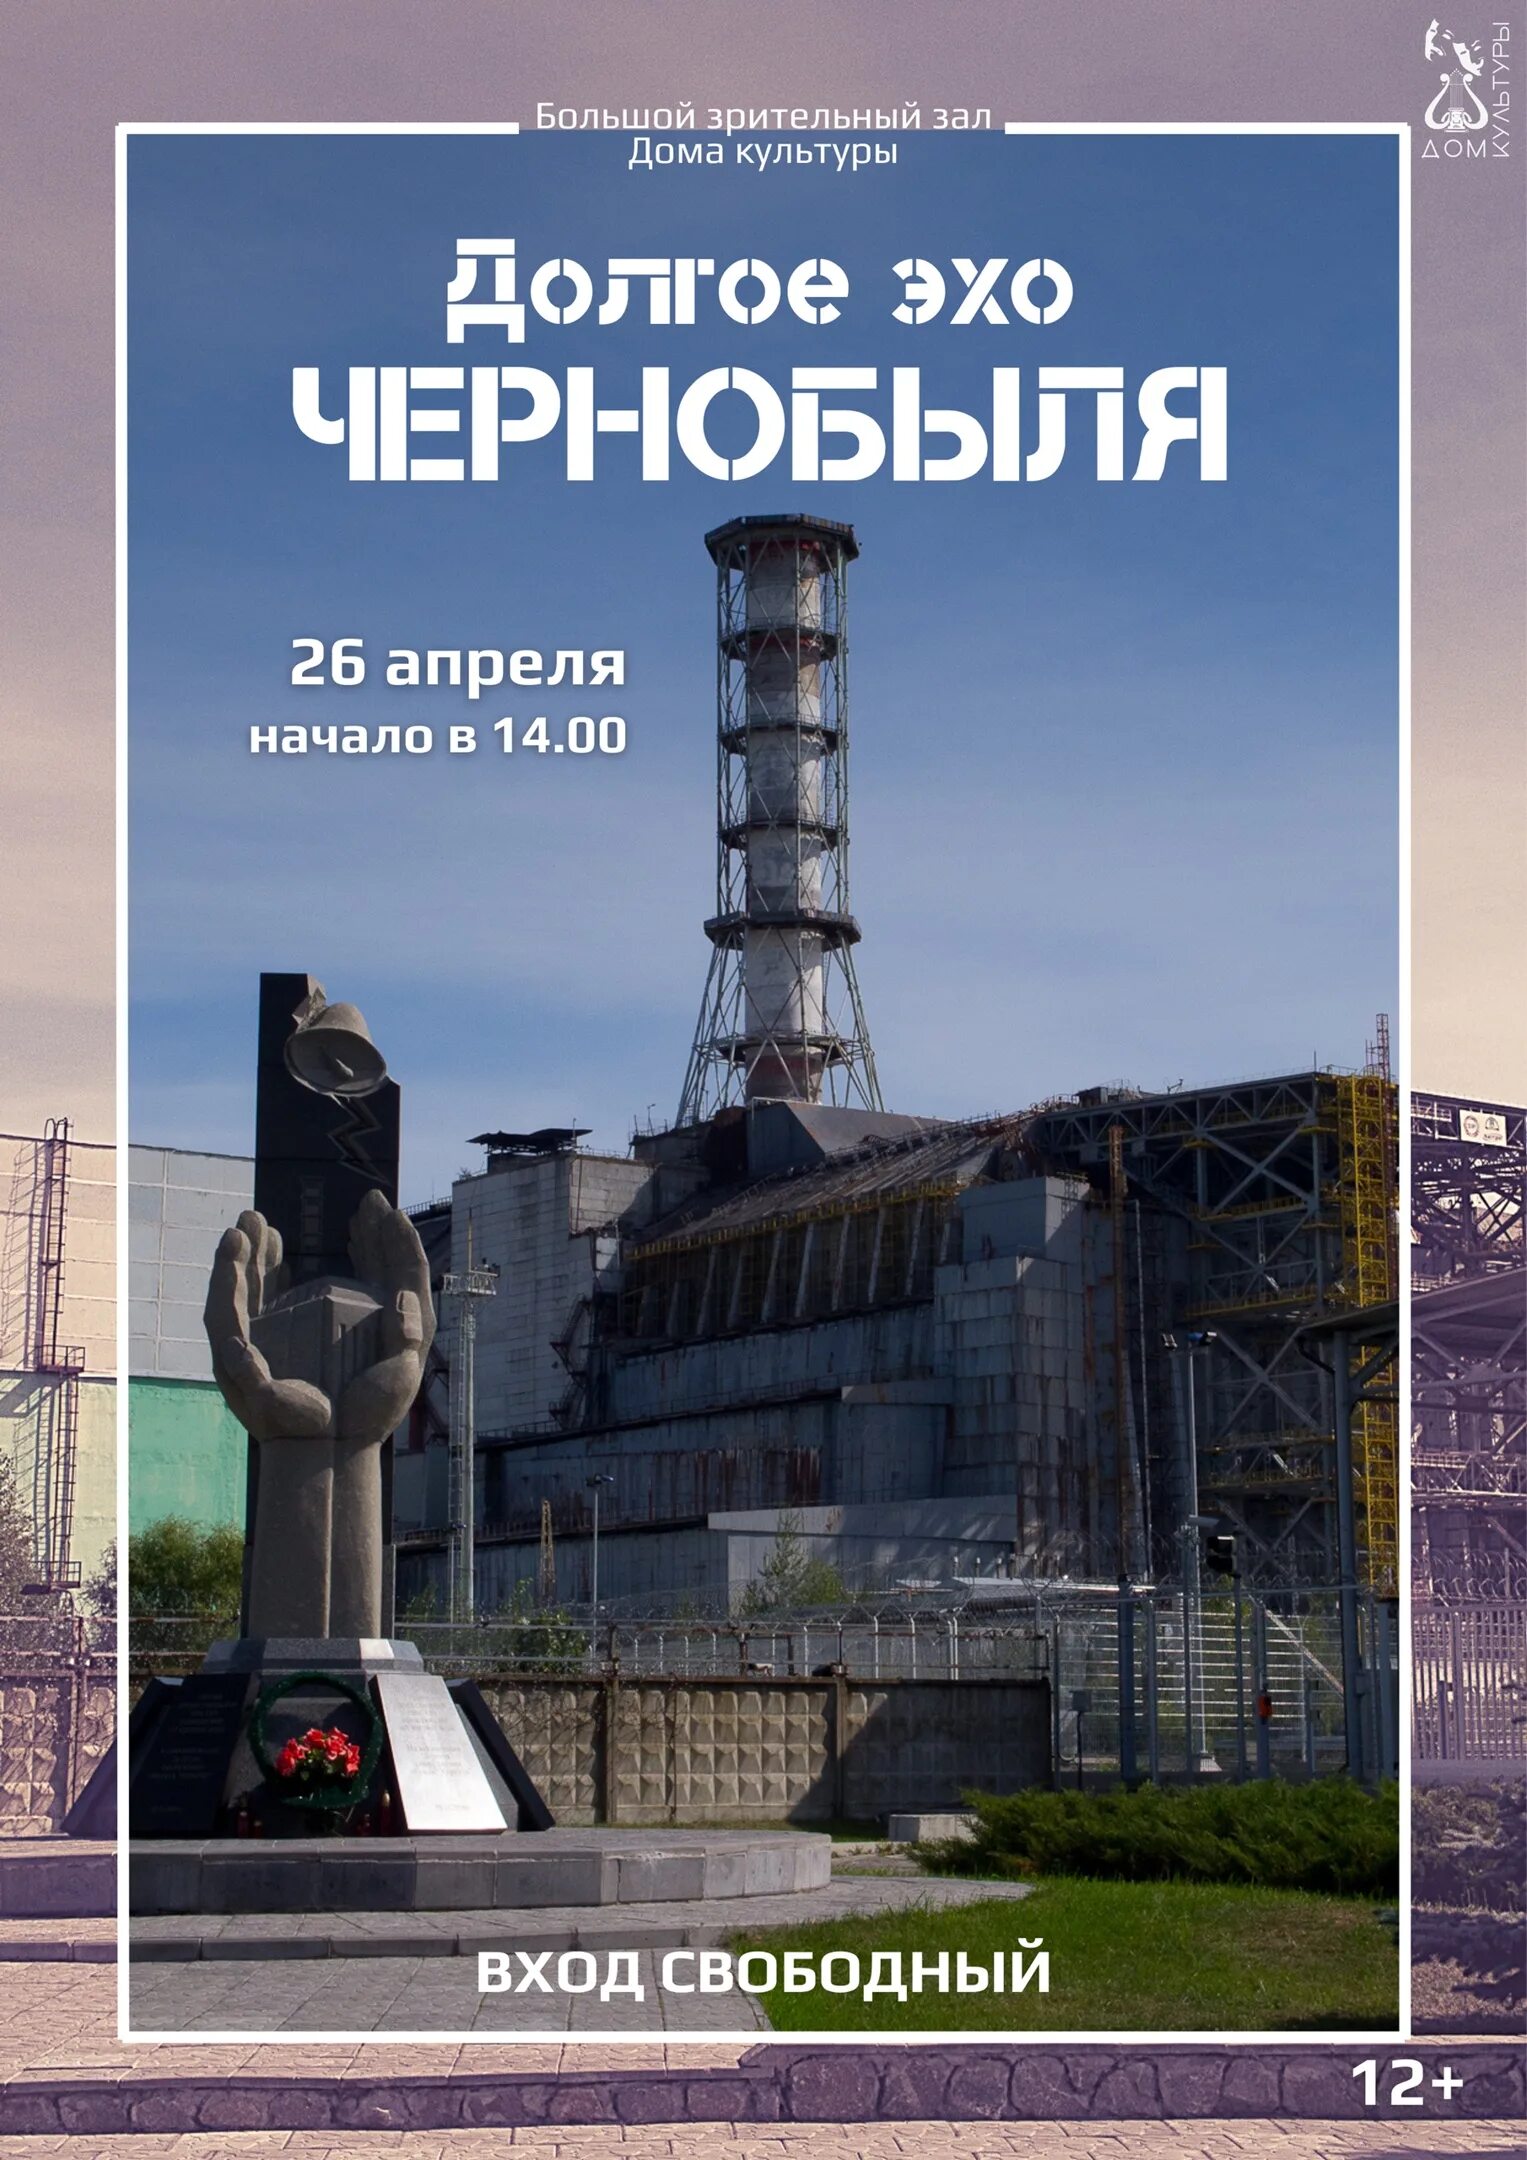 26 апреля чернобыль. Чернобыльская АЭС 26.04. Долгое Эхо Чернобыля. 26 Апреля 1986 года.